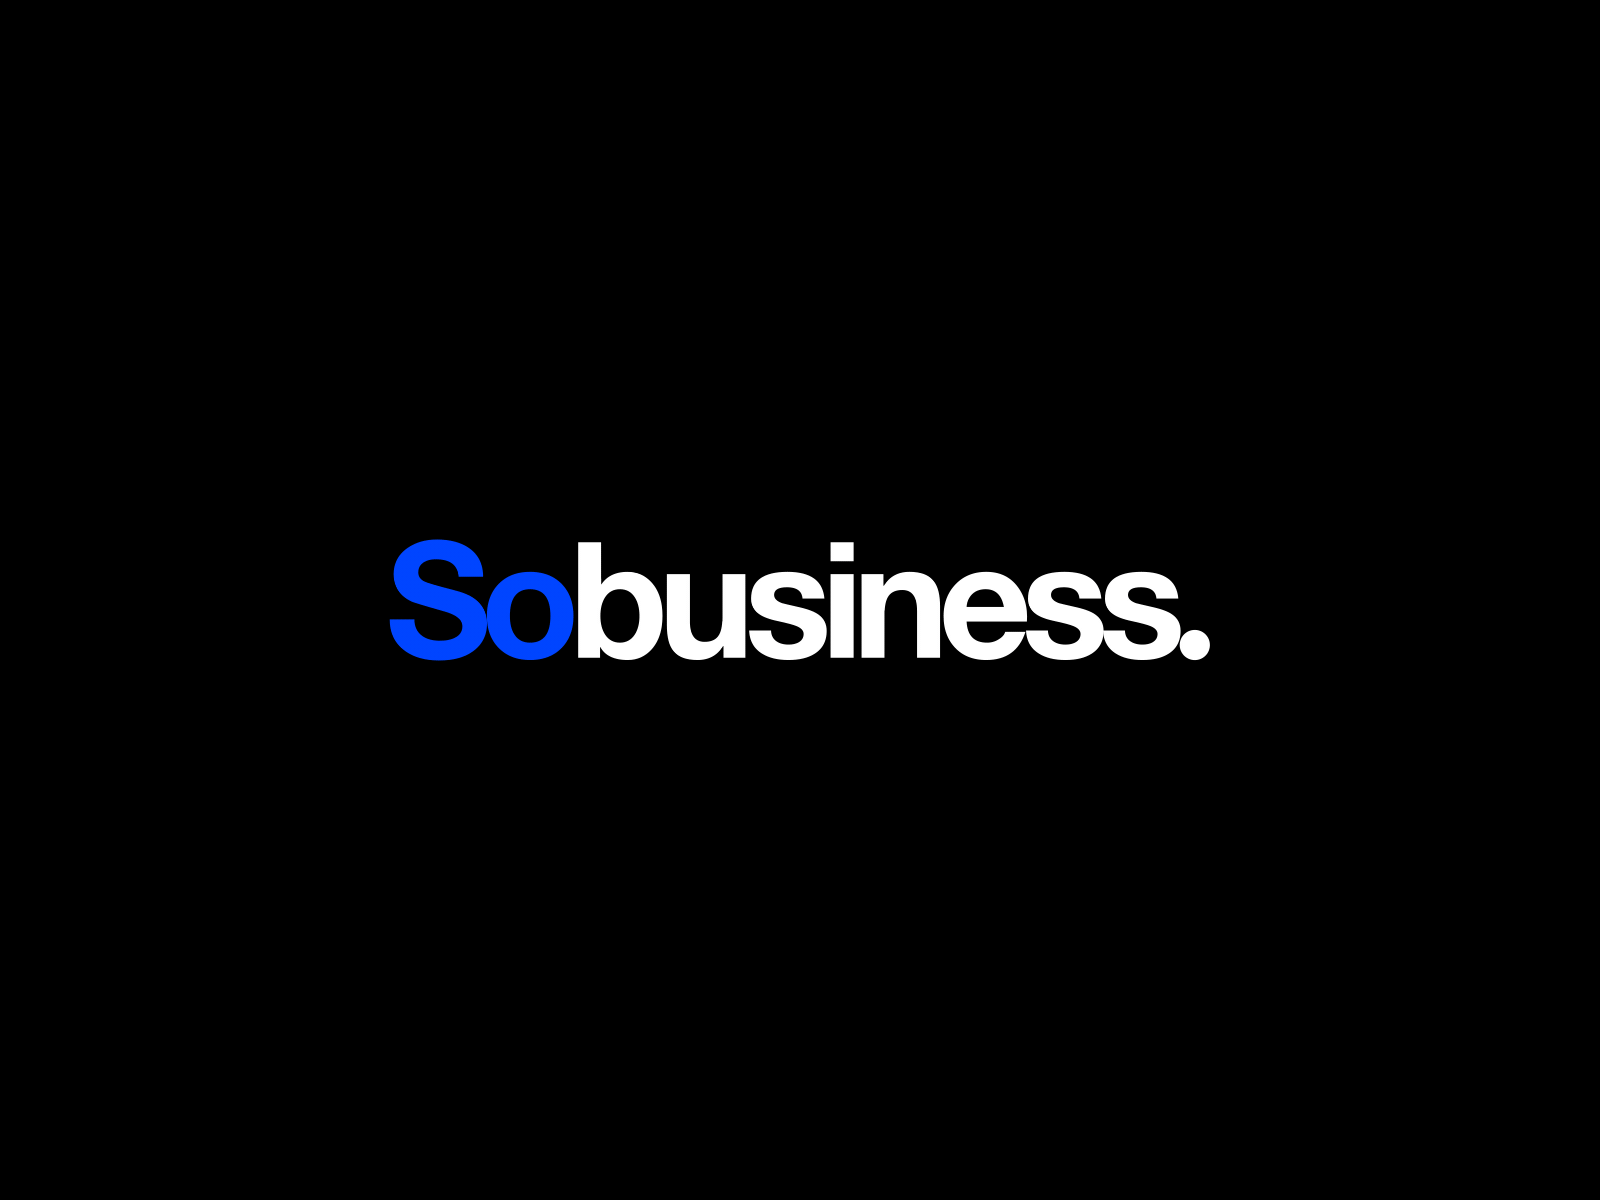 Sobusiness. - Logo animation